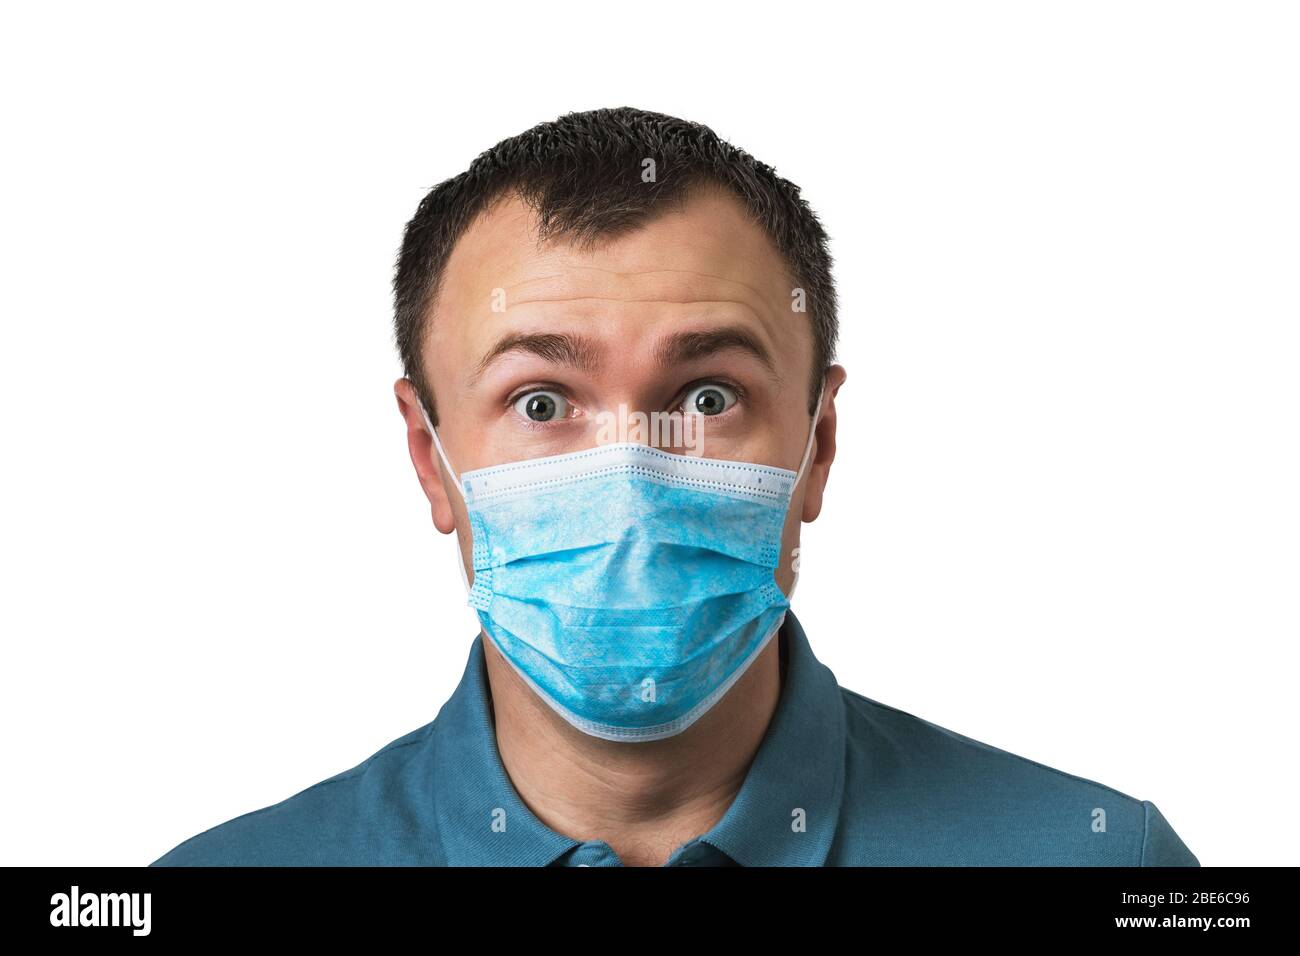 Hombre en una máscara médica con una expresión sorprendida en su rostro aislado sobre un fondo blanco. Concepto de cuarentena pandémica Covid-19 Foto de stock